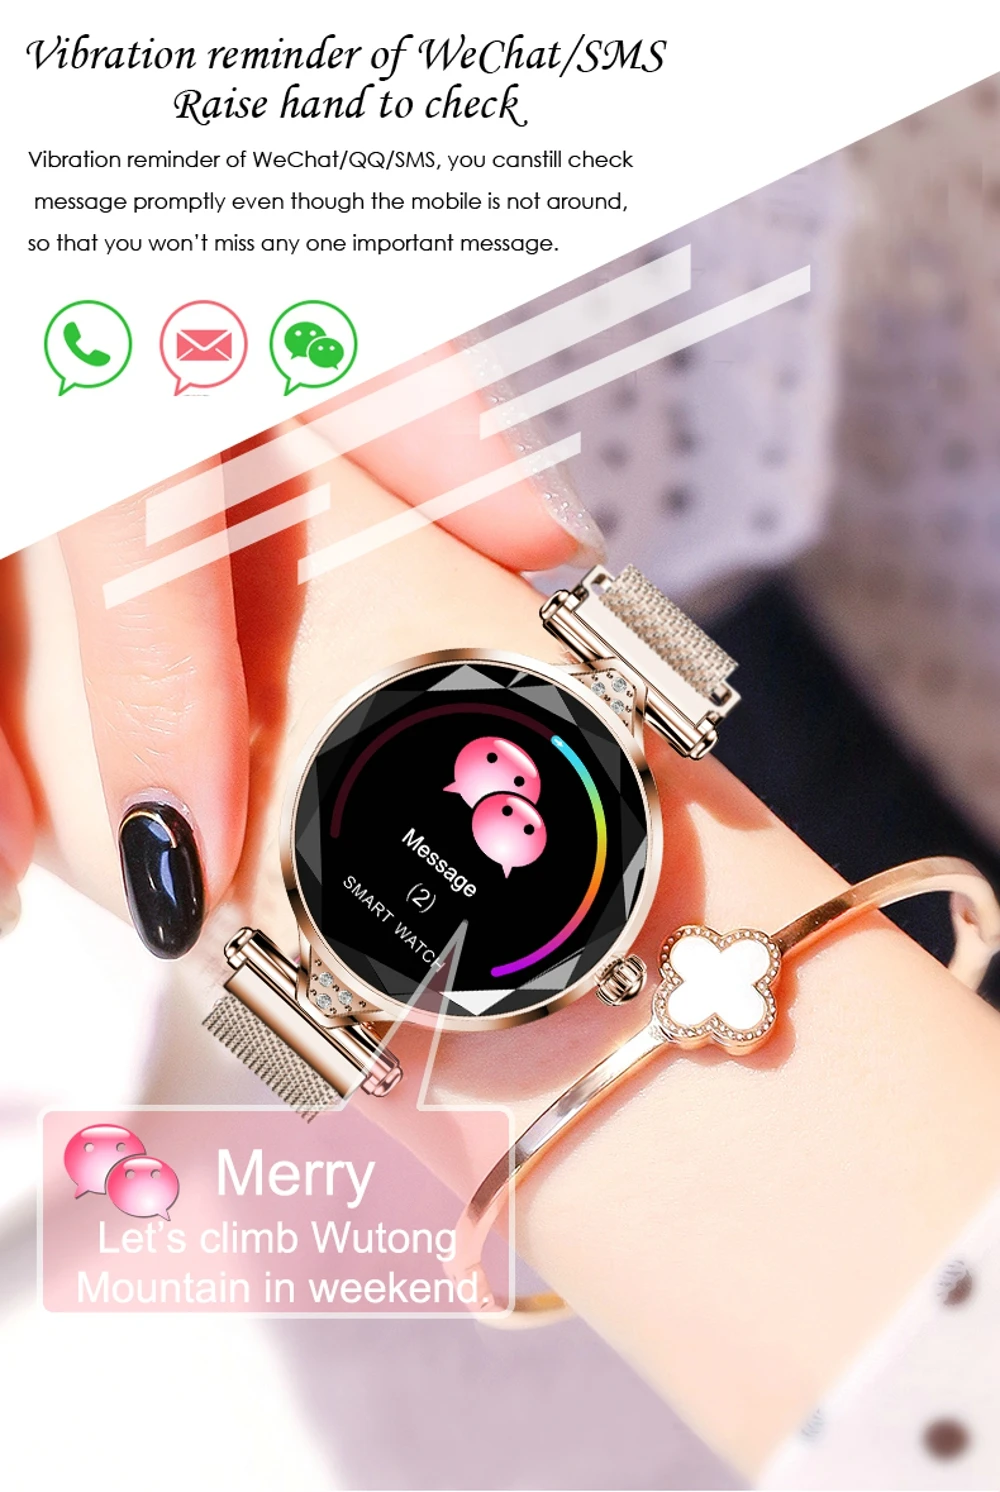 LEMFO Новые Роскошные Смарт часы для женщин Спорт IP67 Водонепроницаемый Bluetooth для Android IOS Iphone Smartwatch подарок для девушки